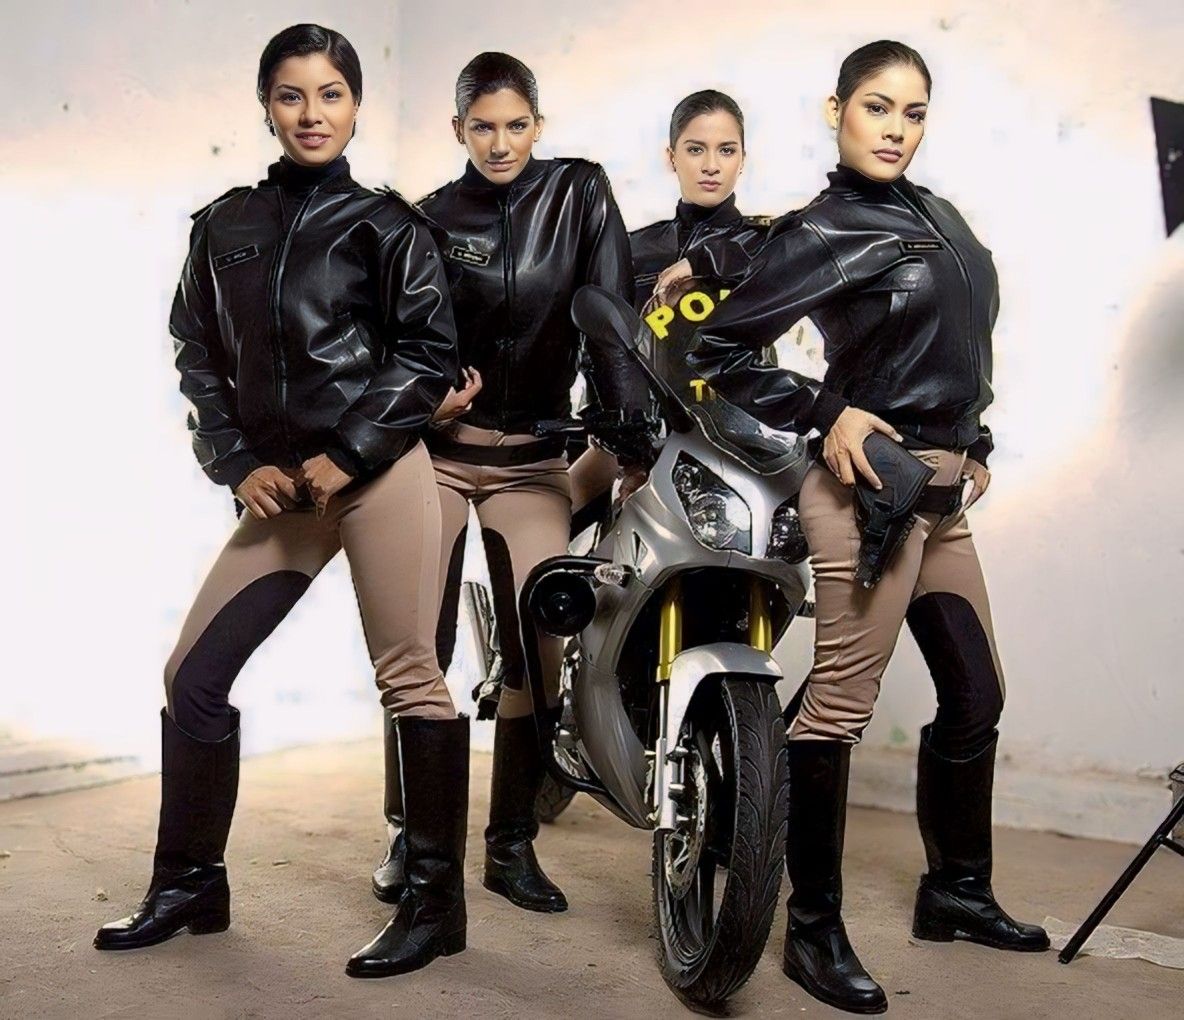 Latin American / Peruvian Motorcycle Police Officers 27755-latin-american---peruvian-motorcycle-police-officers.jpg